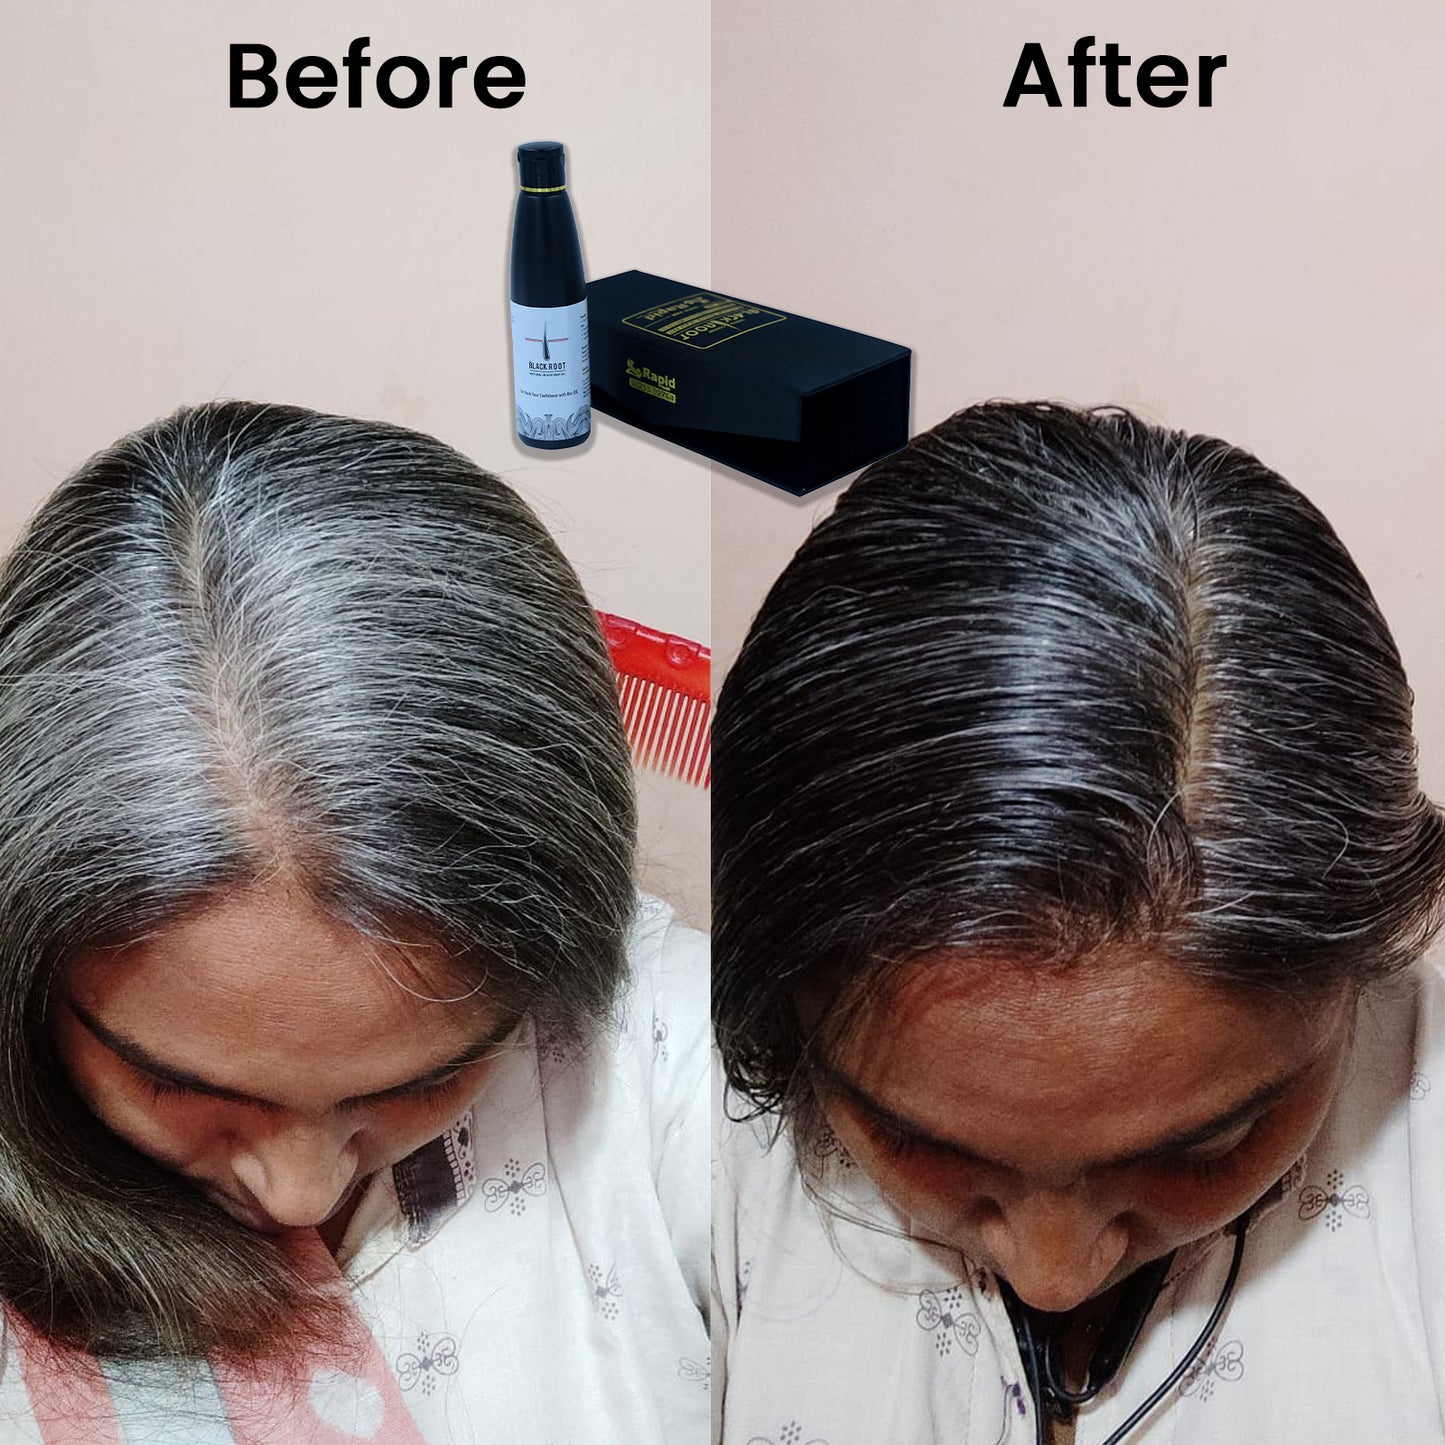 Black Root Natural Hair Oil - 100ml + Free Shampoo 100ml